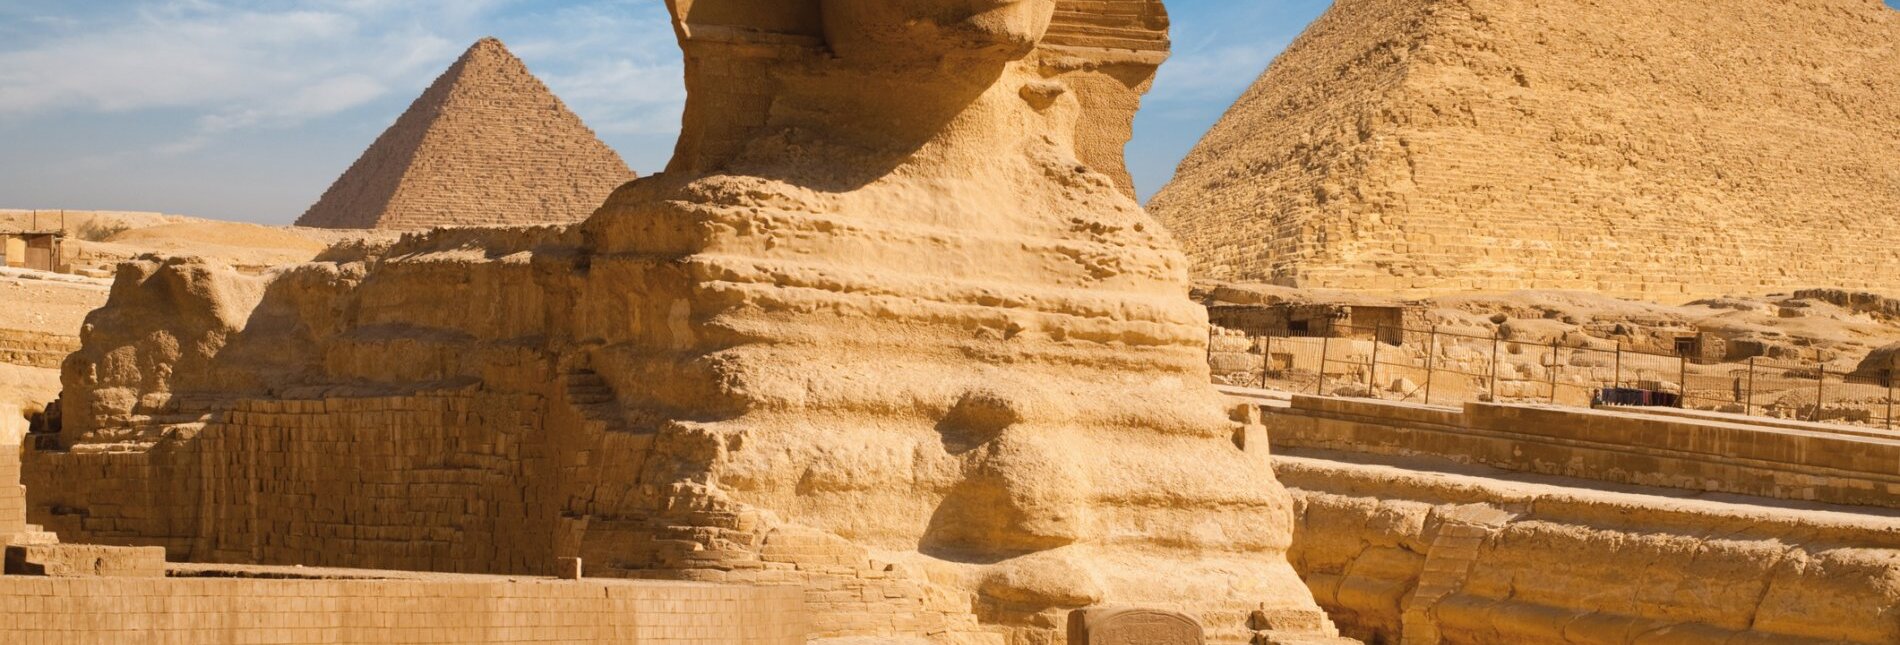 Die Sphinx mit den Pyramiden Menkaure und Khafre in Gizeh